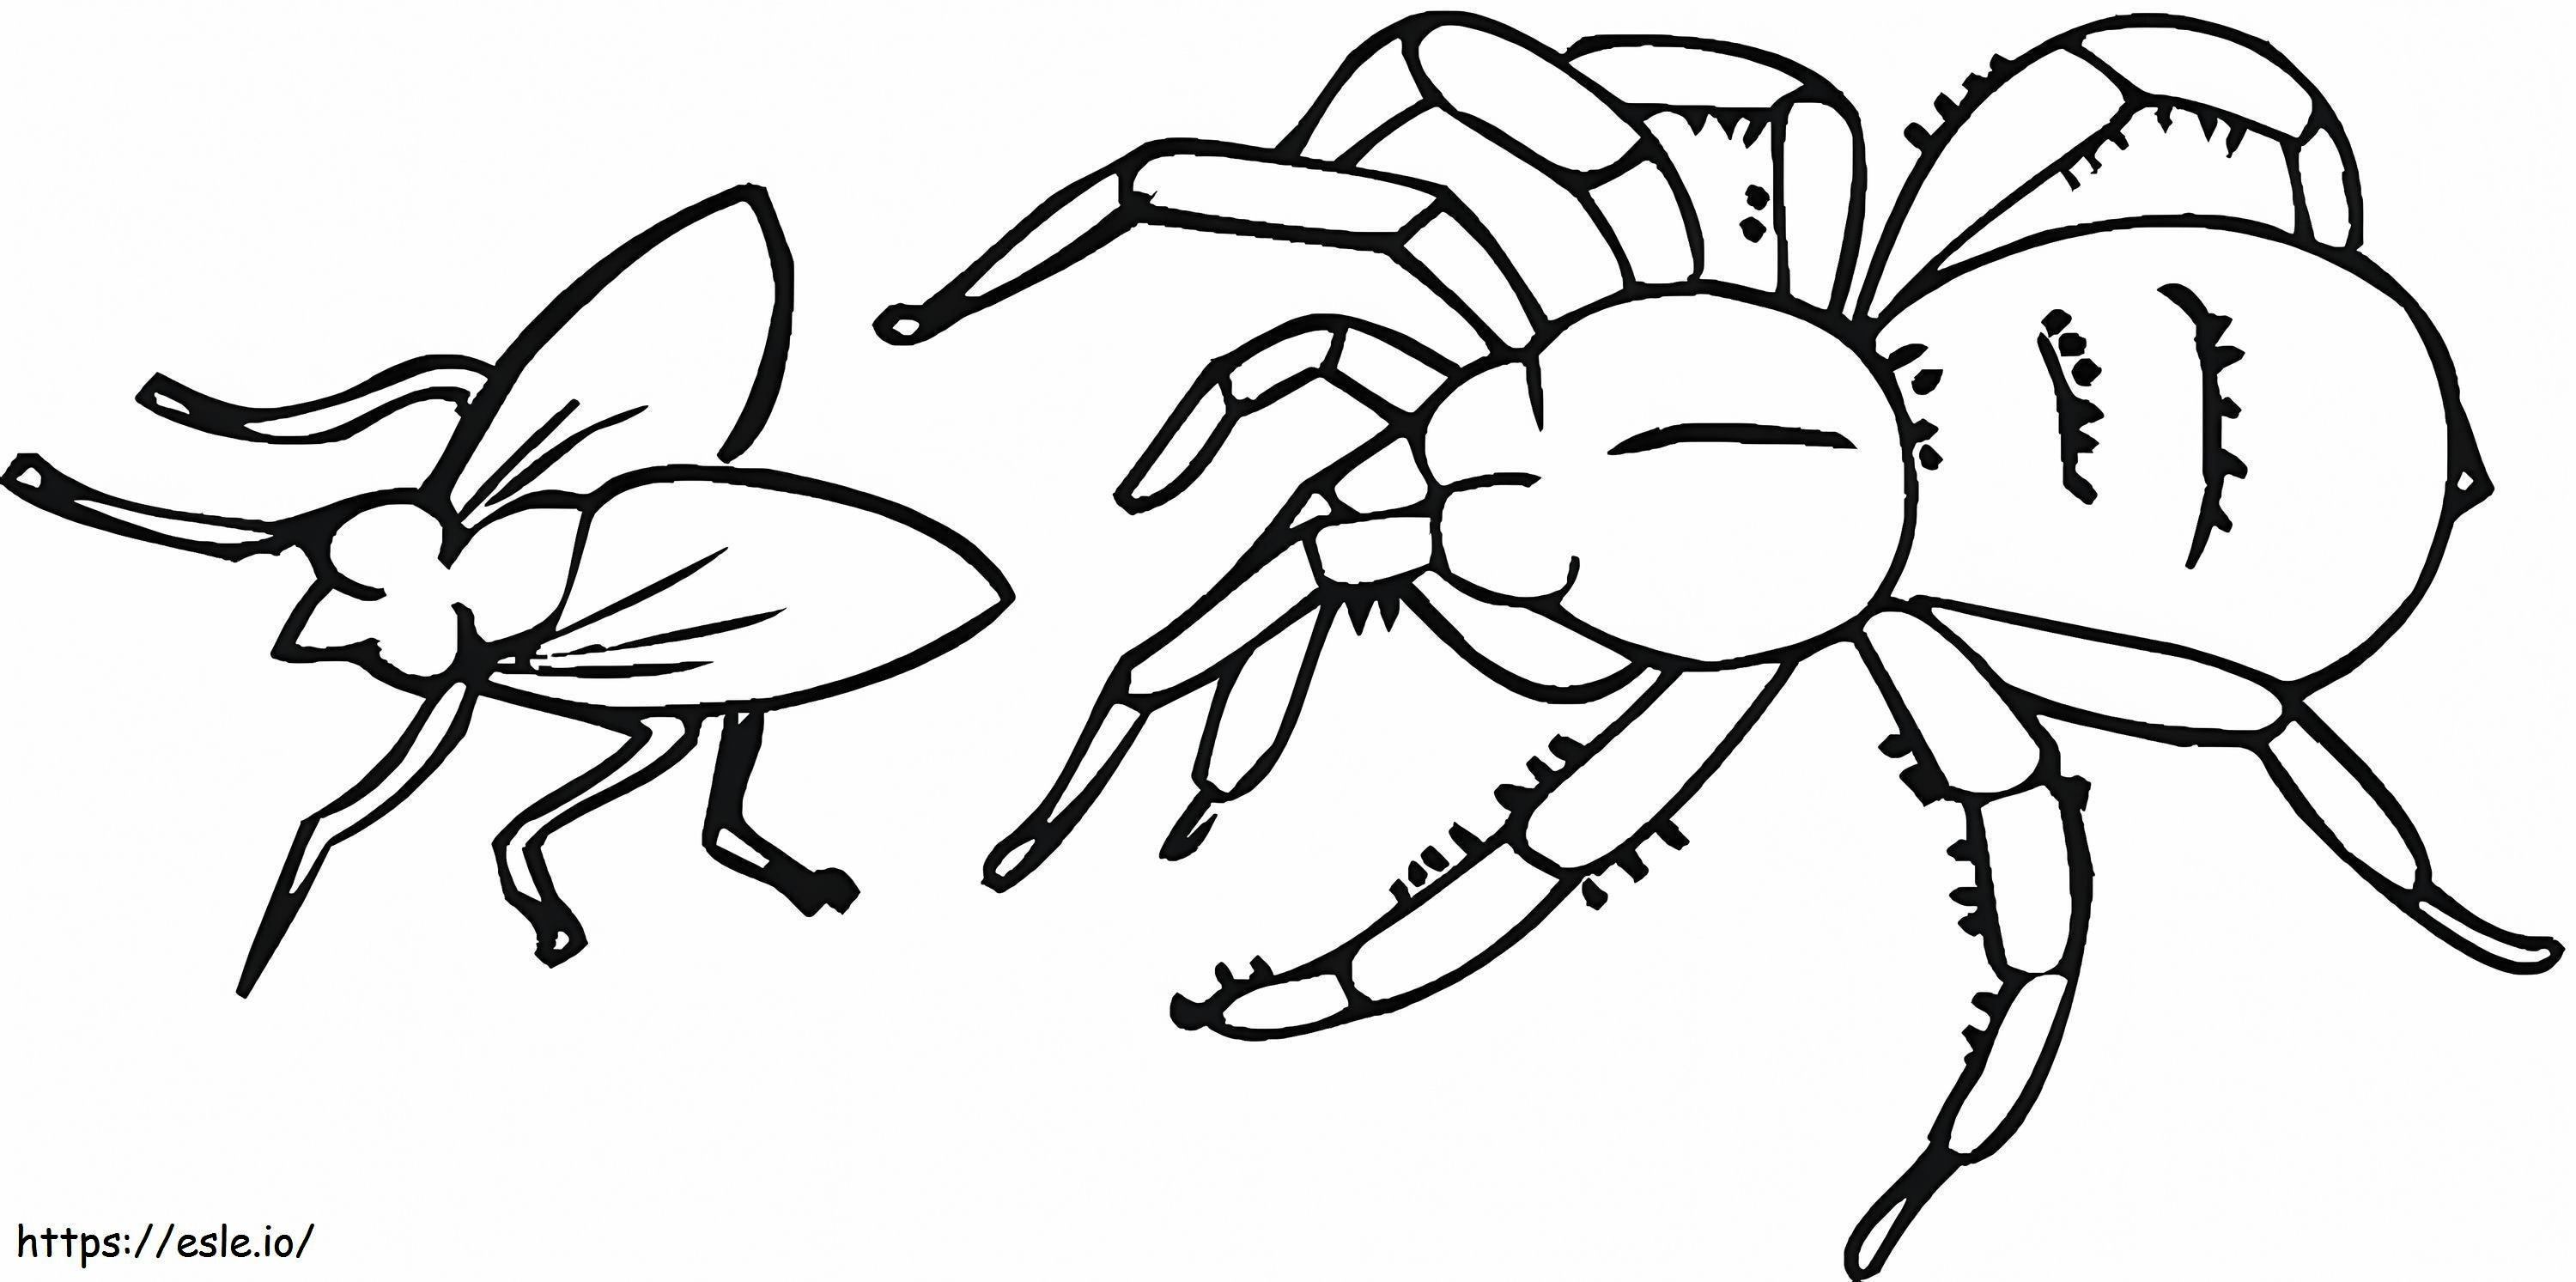 Spinne und Fliege ausmalbilder